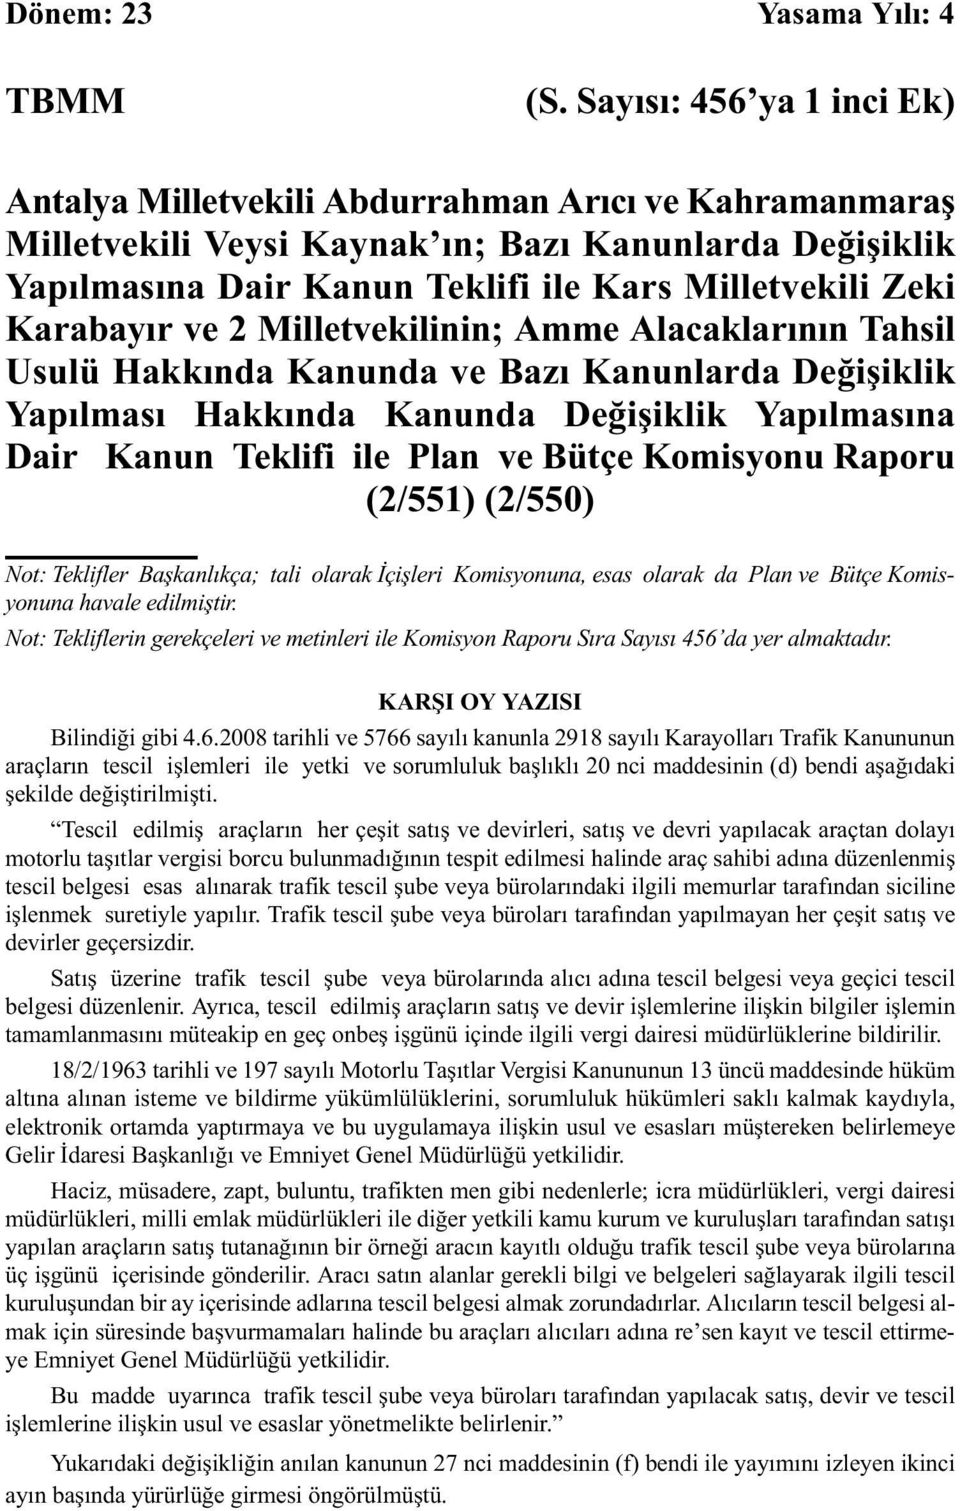 Karabayır ve 2 Milletvekilinin; Amme Alacaklarının Tahsil Usulü Hakkında Kanunda ve Bazı Kanunlarda Değişiklik Yapılması Hakkında Kanunda Değişiklik Yapılmasına Dair Kanun Teklifi ile Plan ve Bütçe